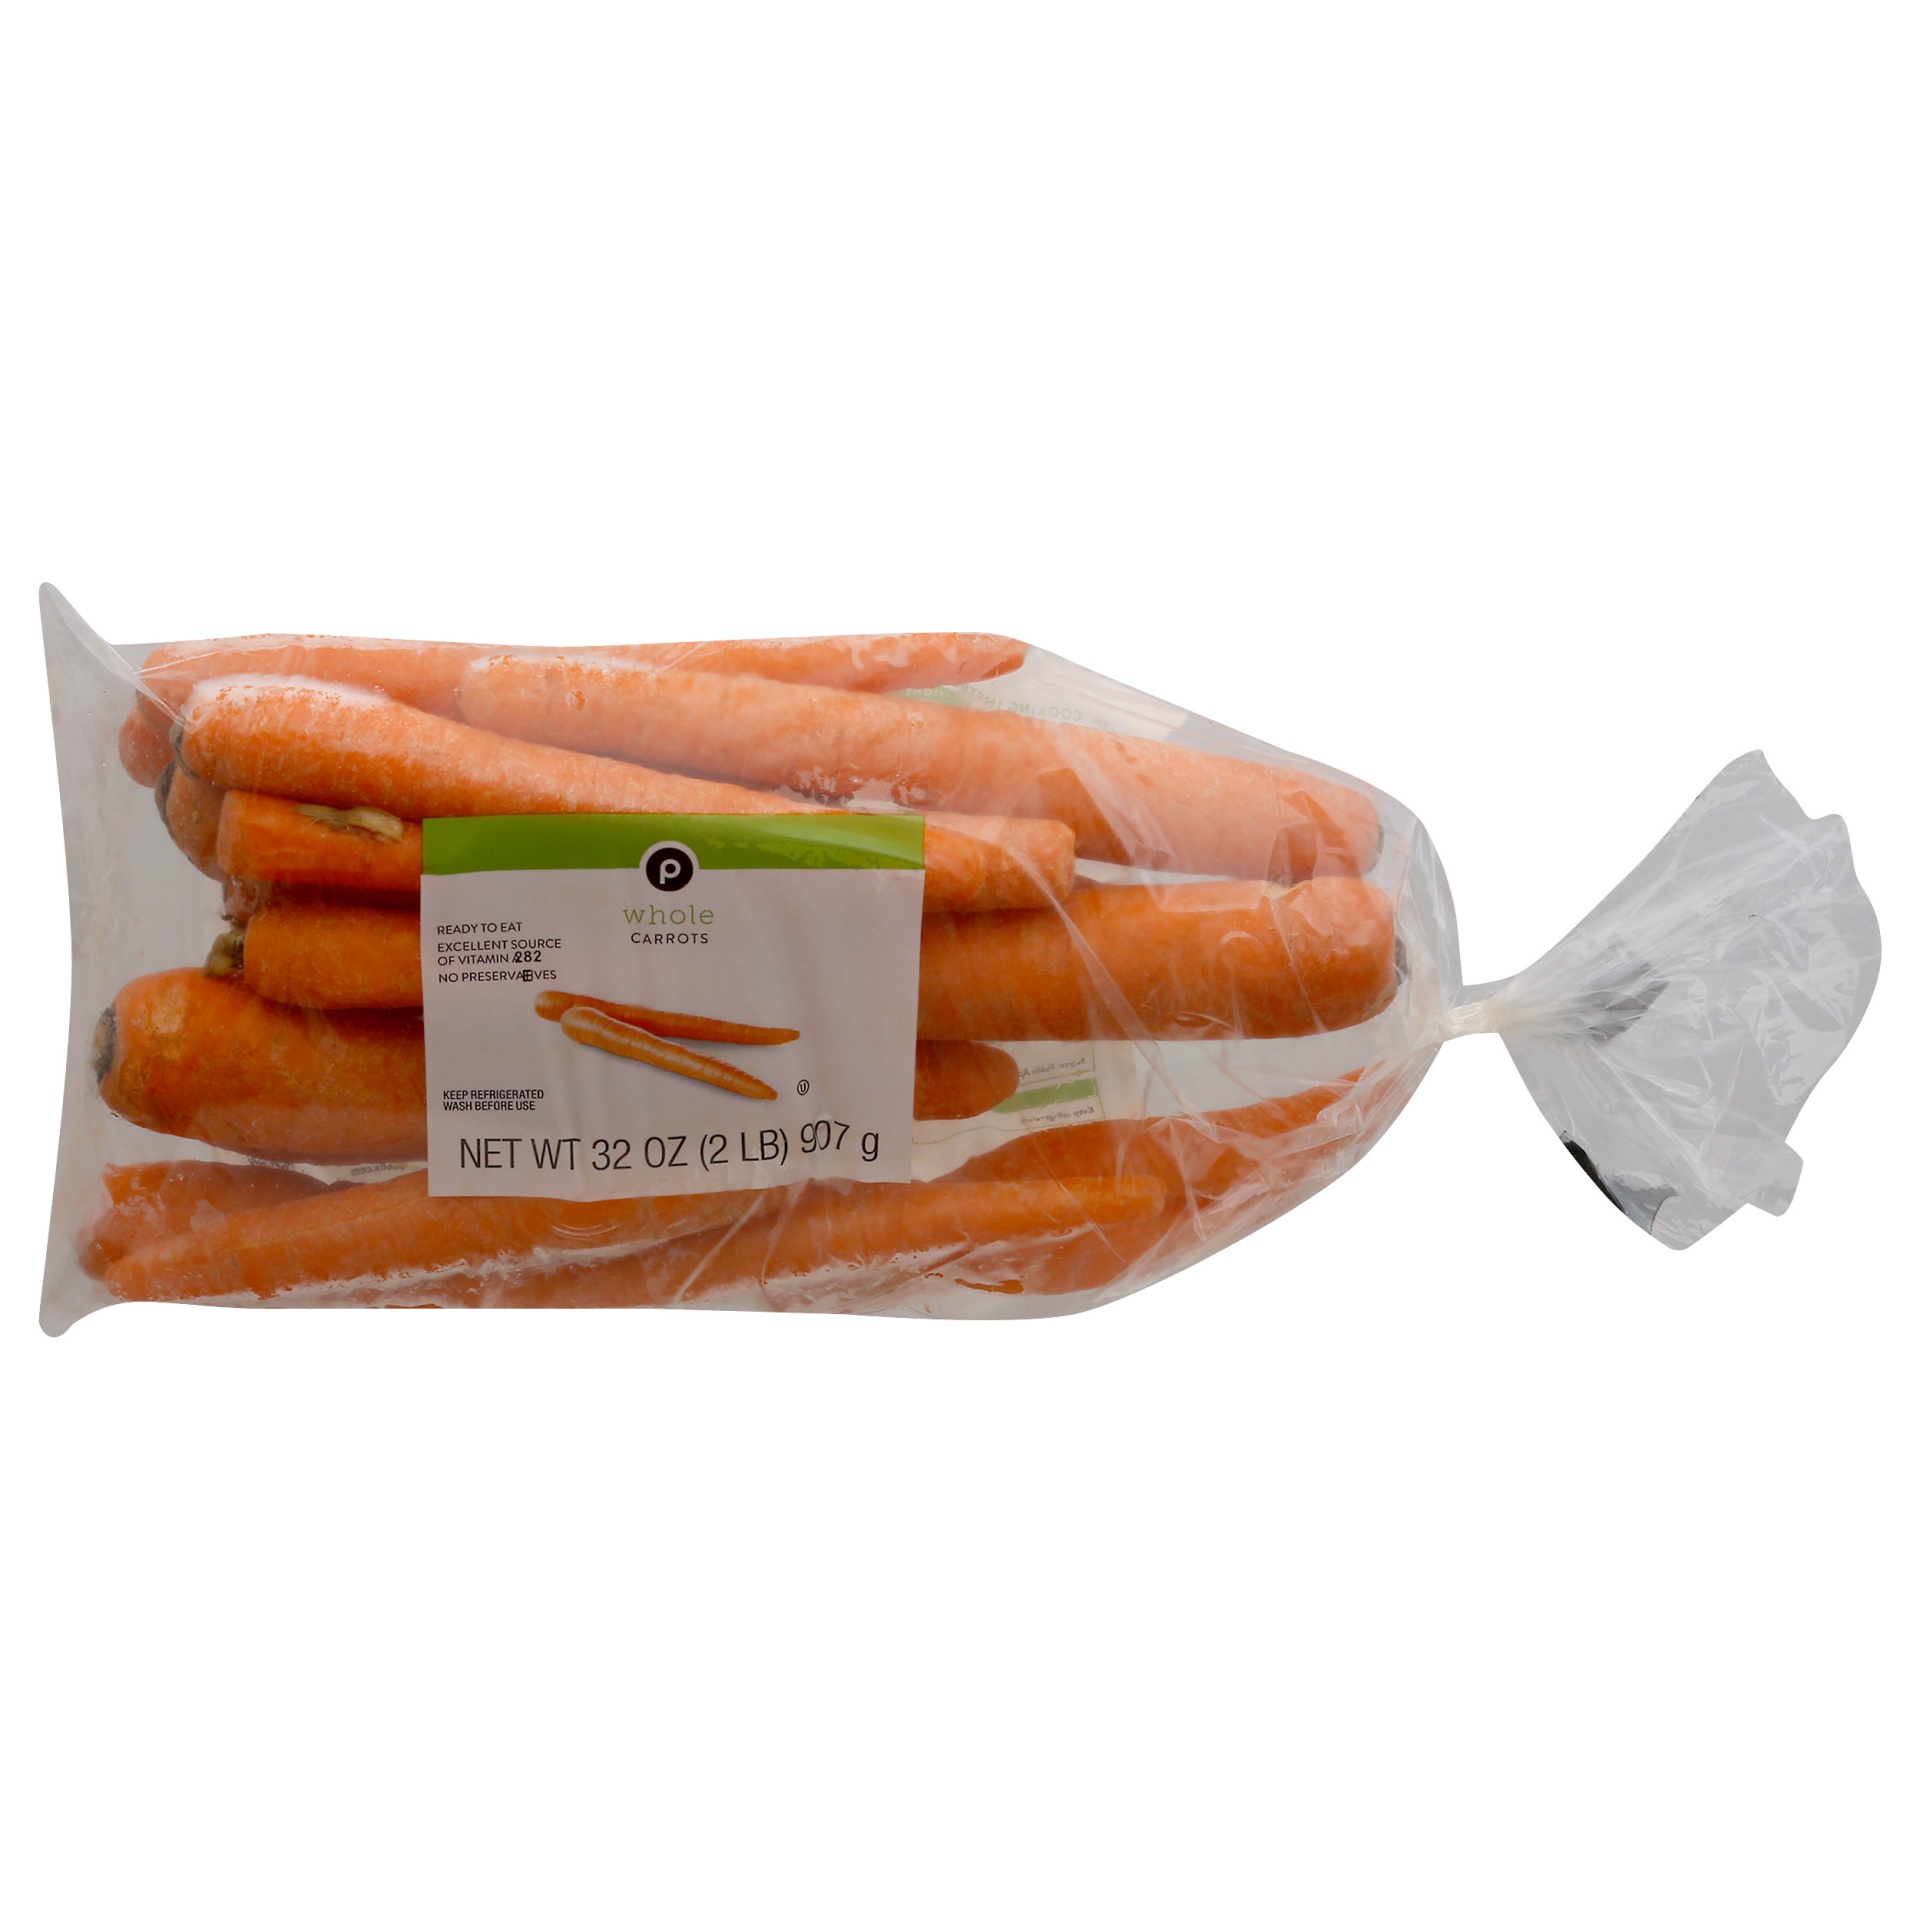 slide 1 of 1, Publix Whole Carrots, 32 oz